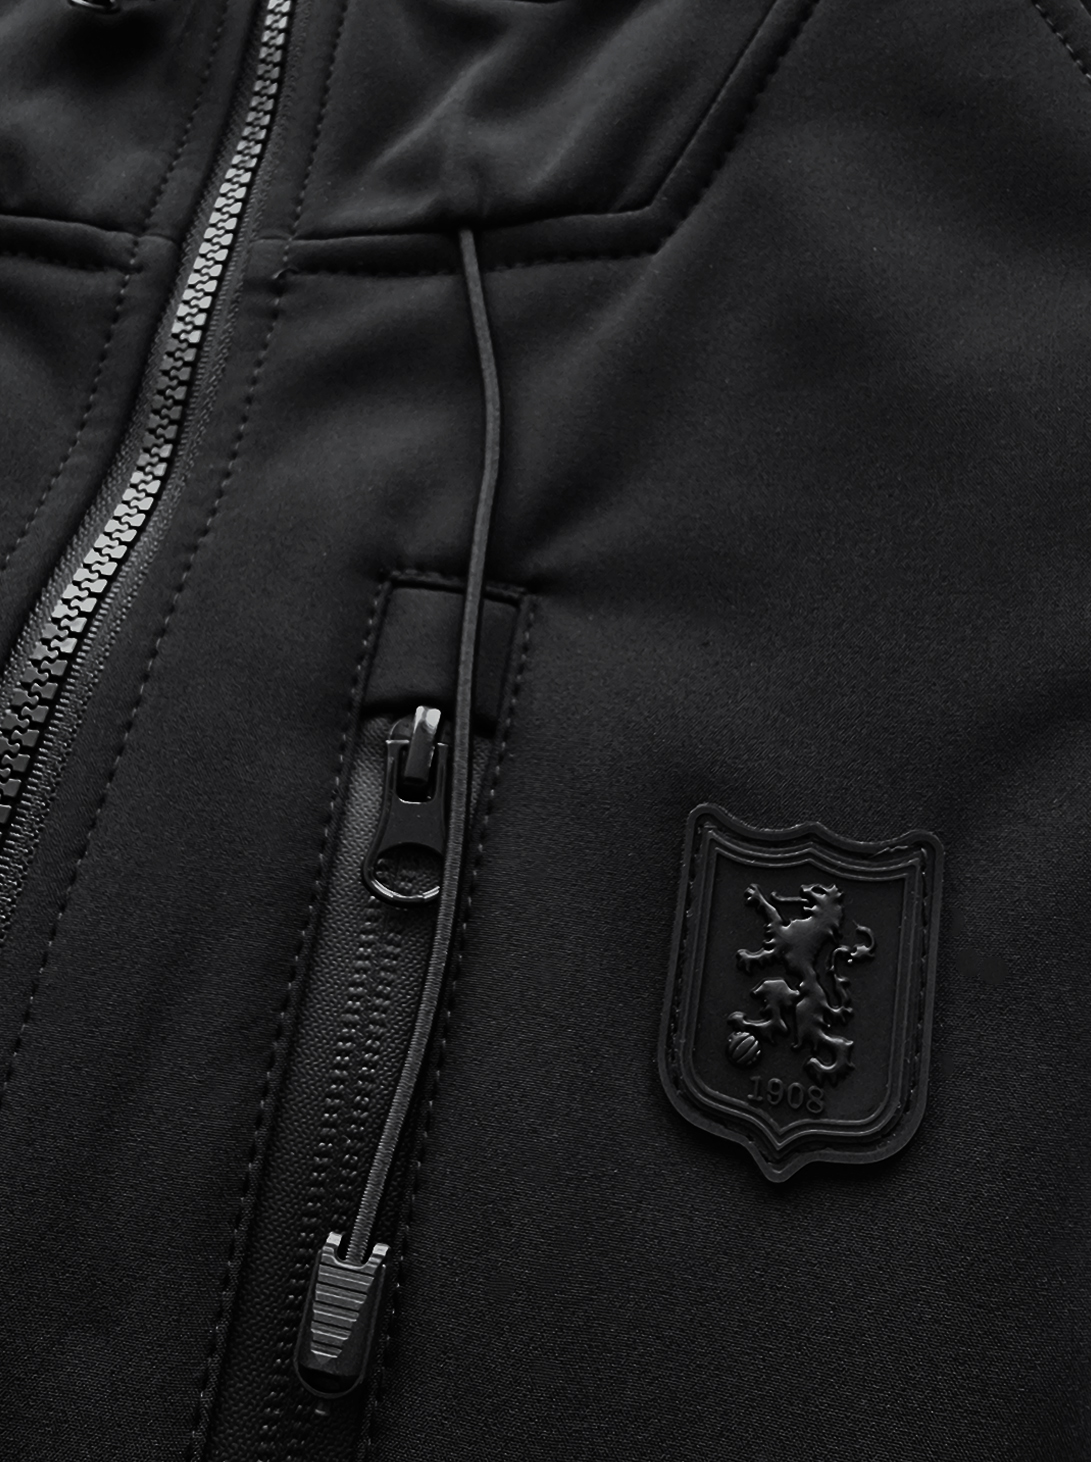 FRFC1908 Softshell Jacket Mod.24 - Details Pockets Front - Black Label Detail